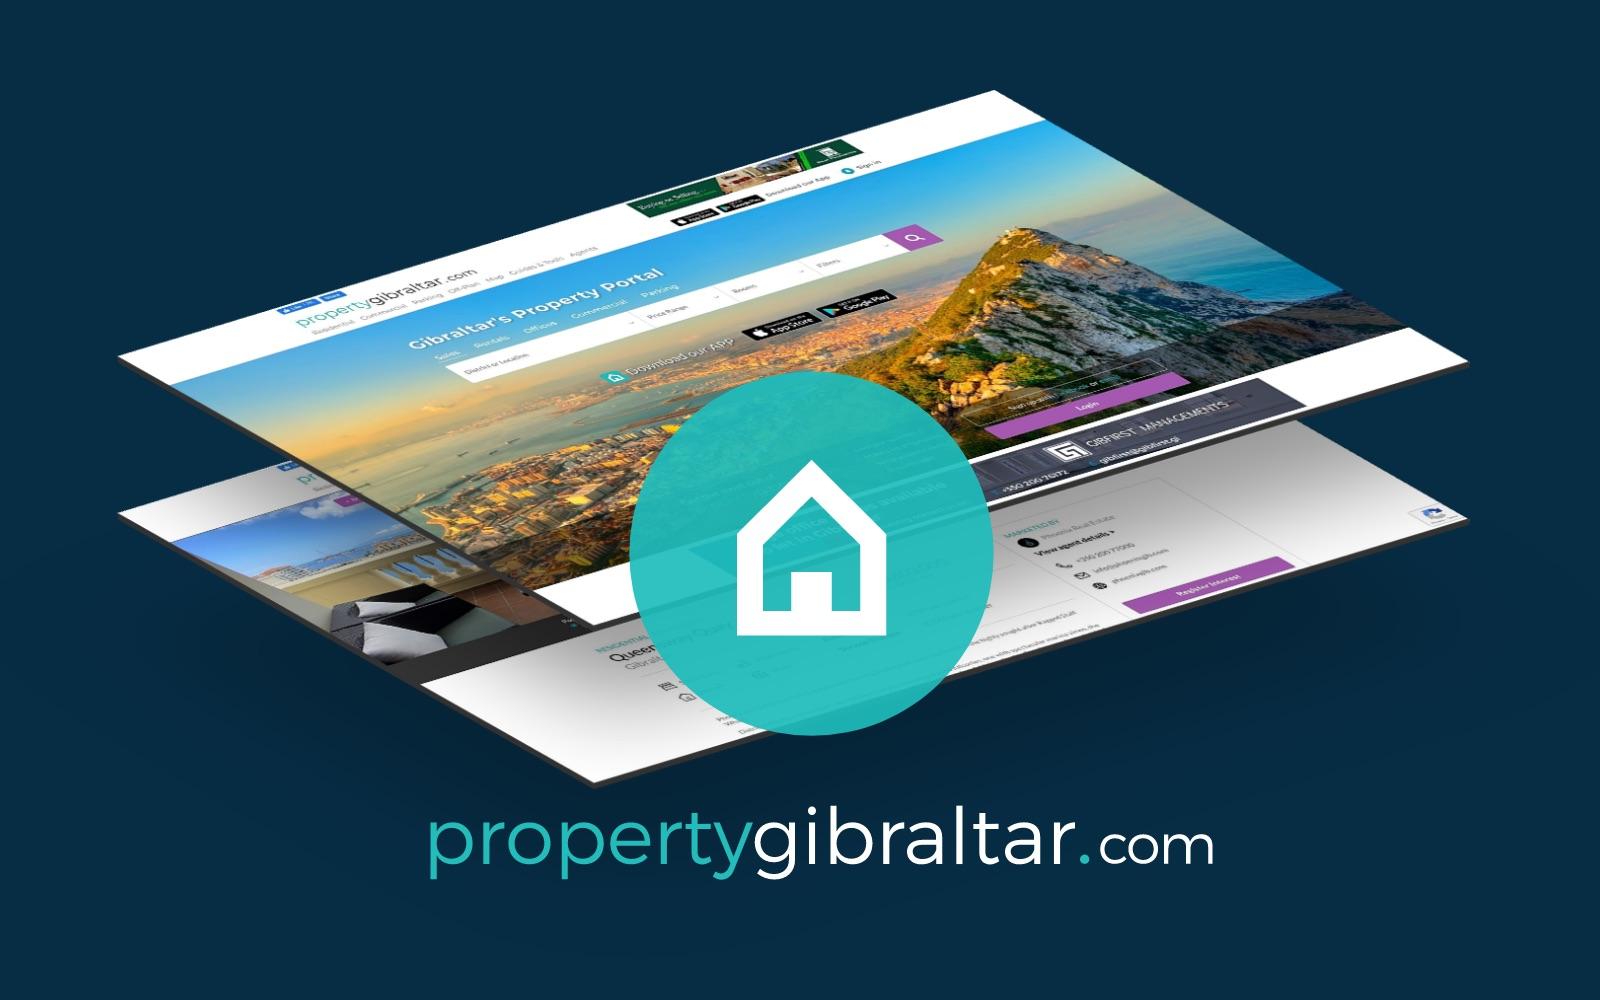 PropertyGibraltar.com Image